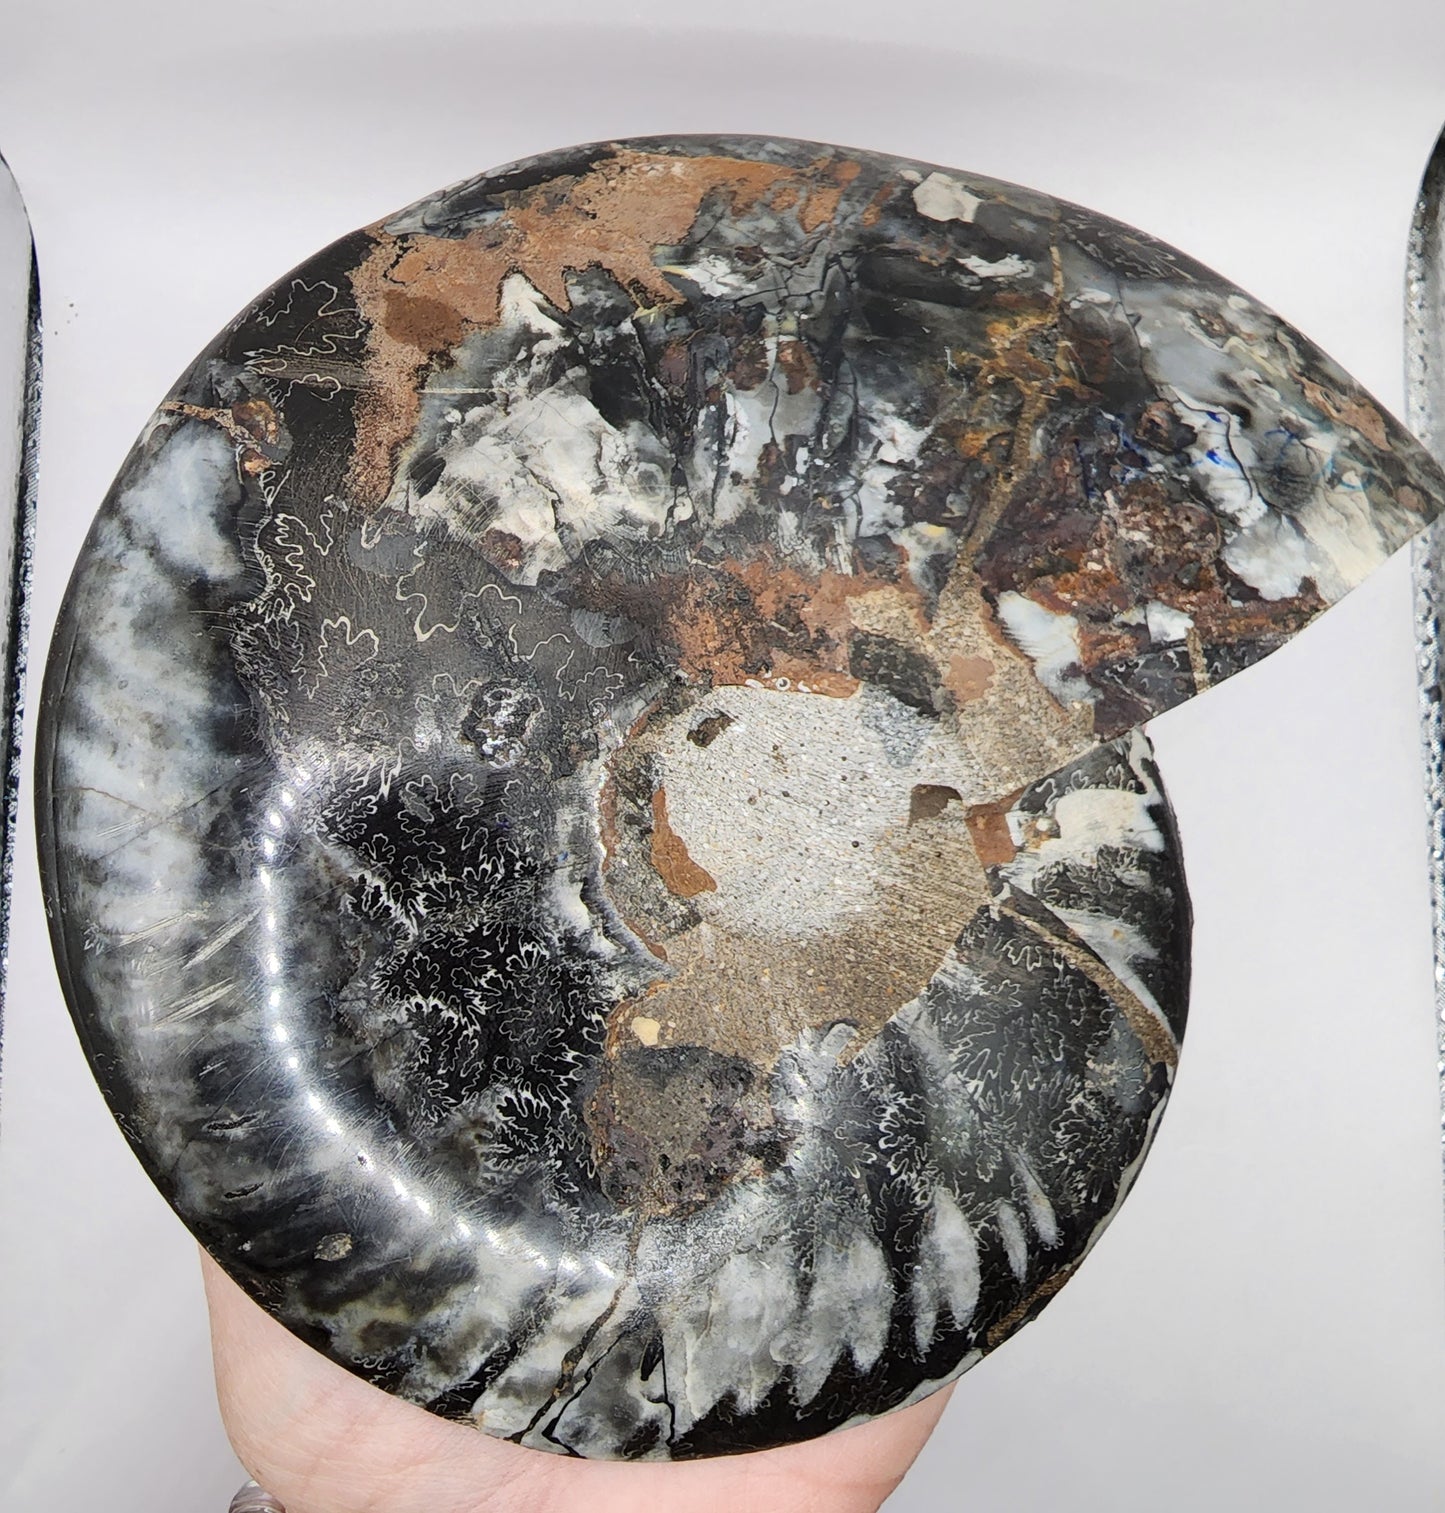 Polished Ammonite from Madagascar